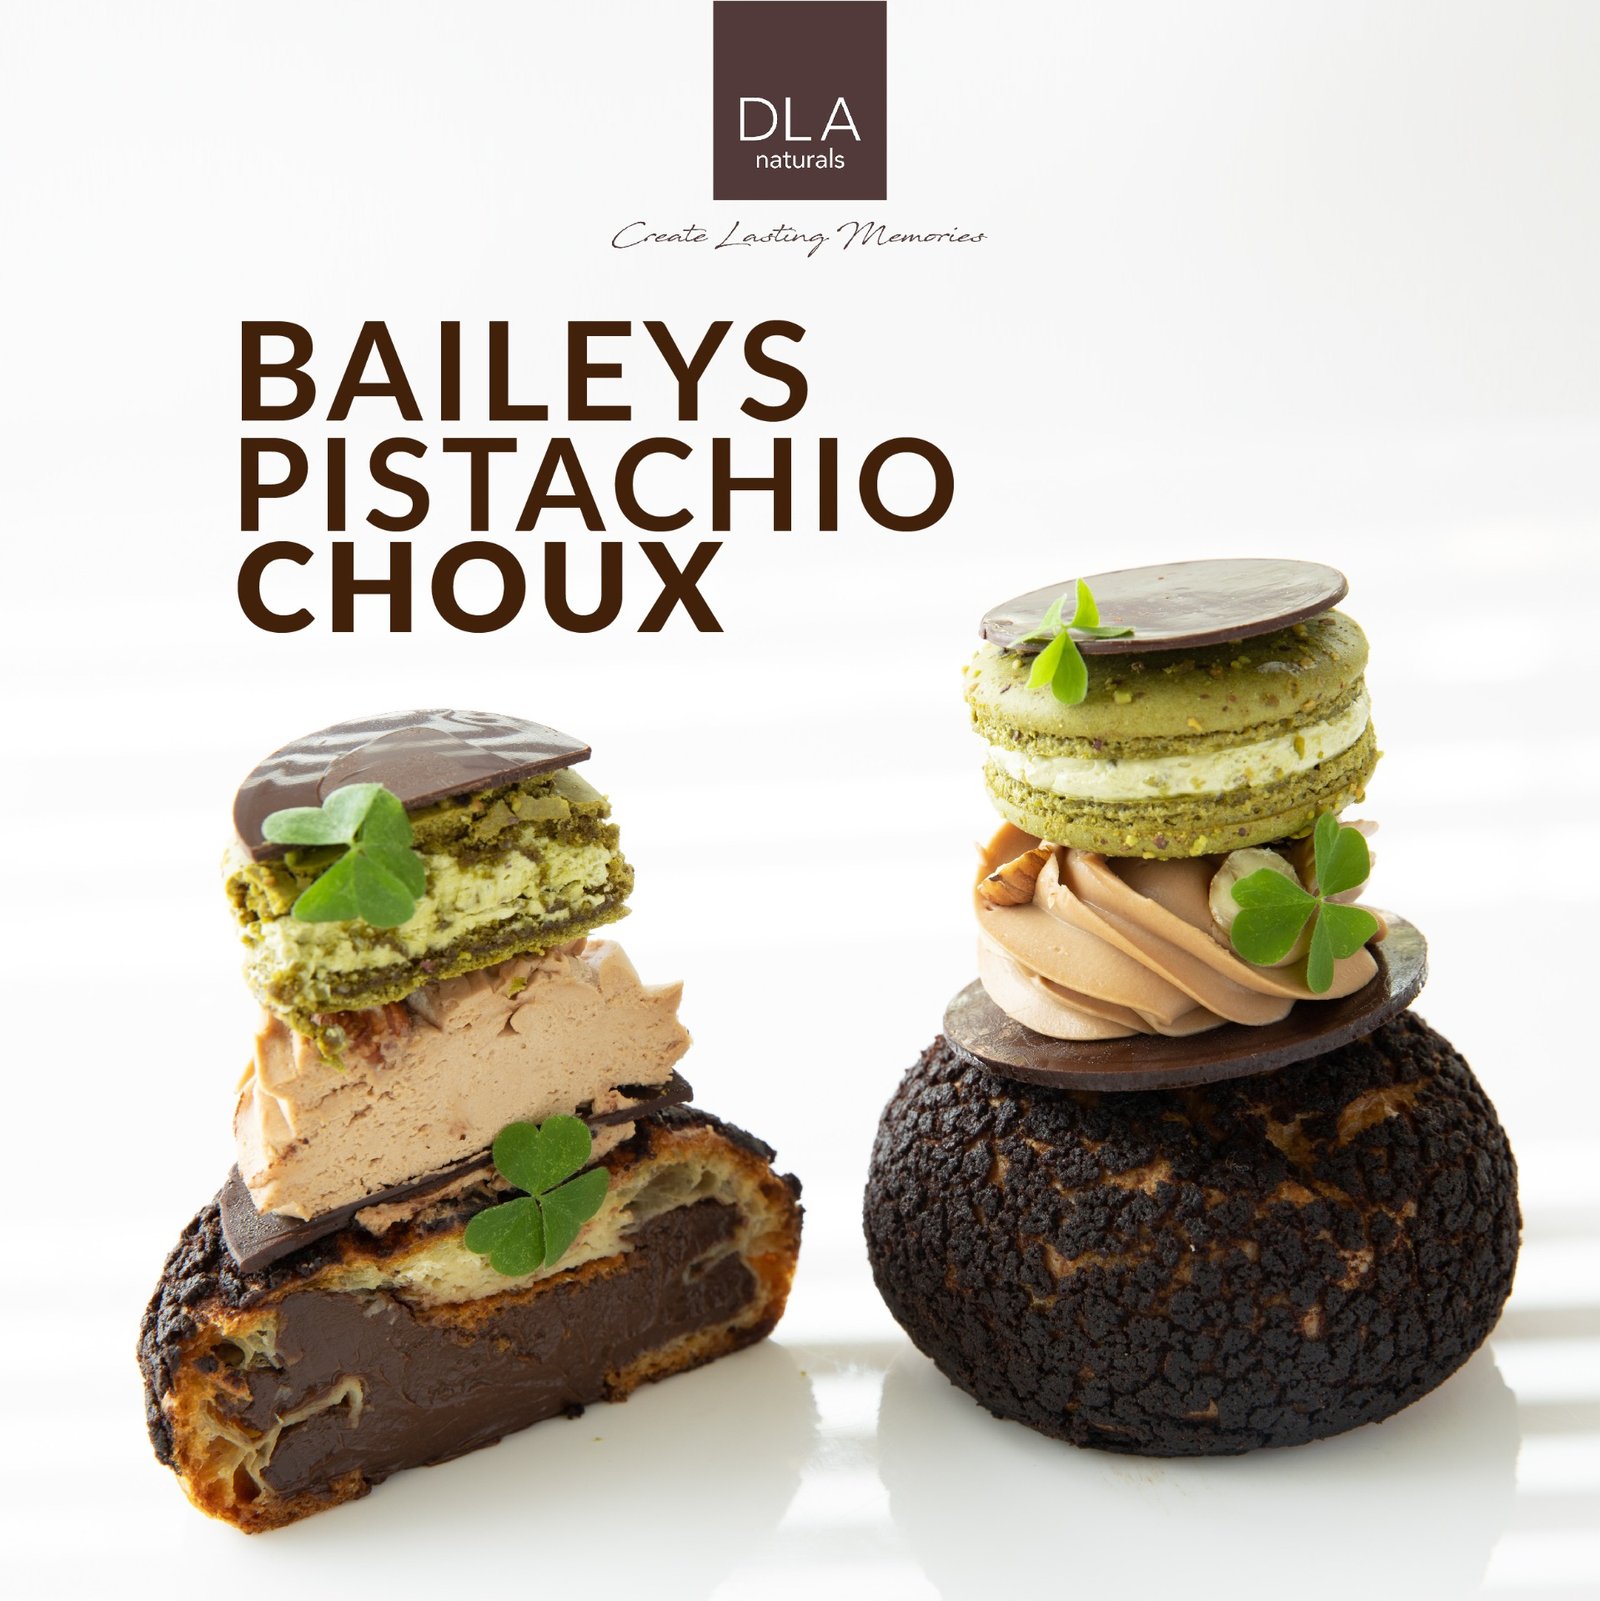 Baileys Pistachio Choux